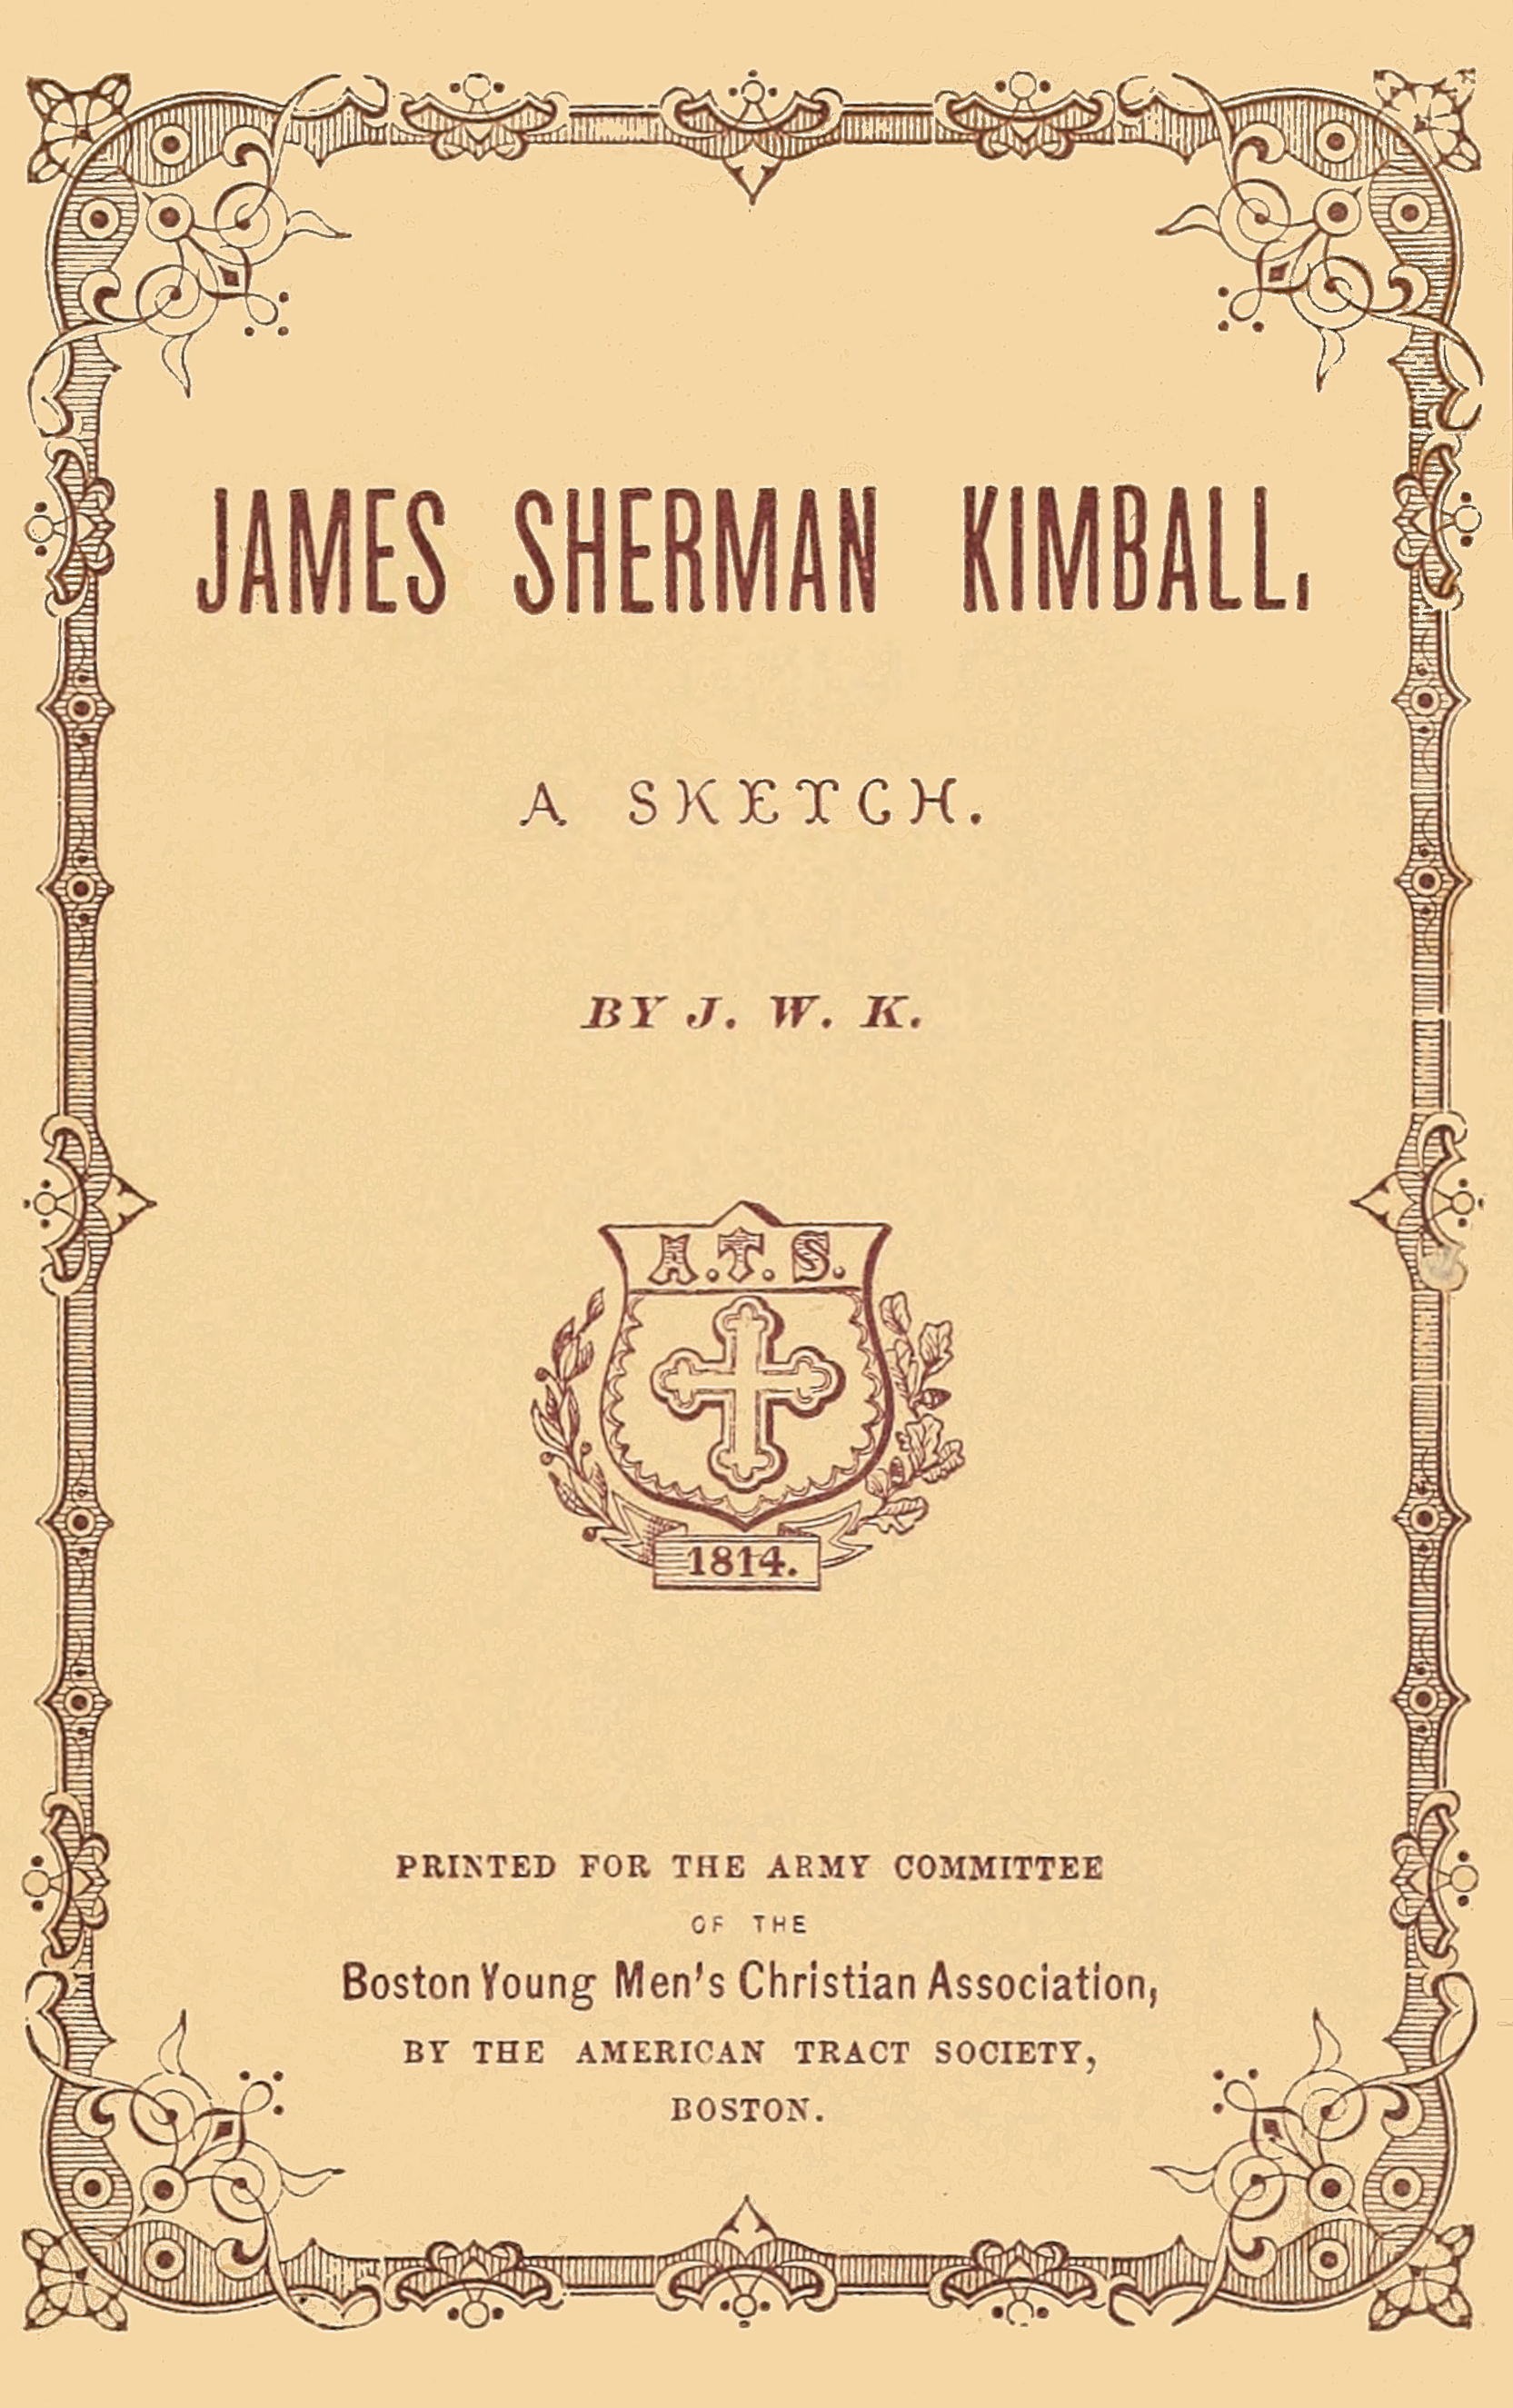 James Sherman Kimball